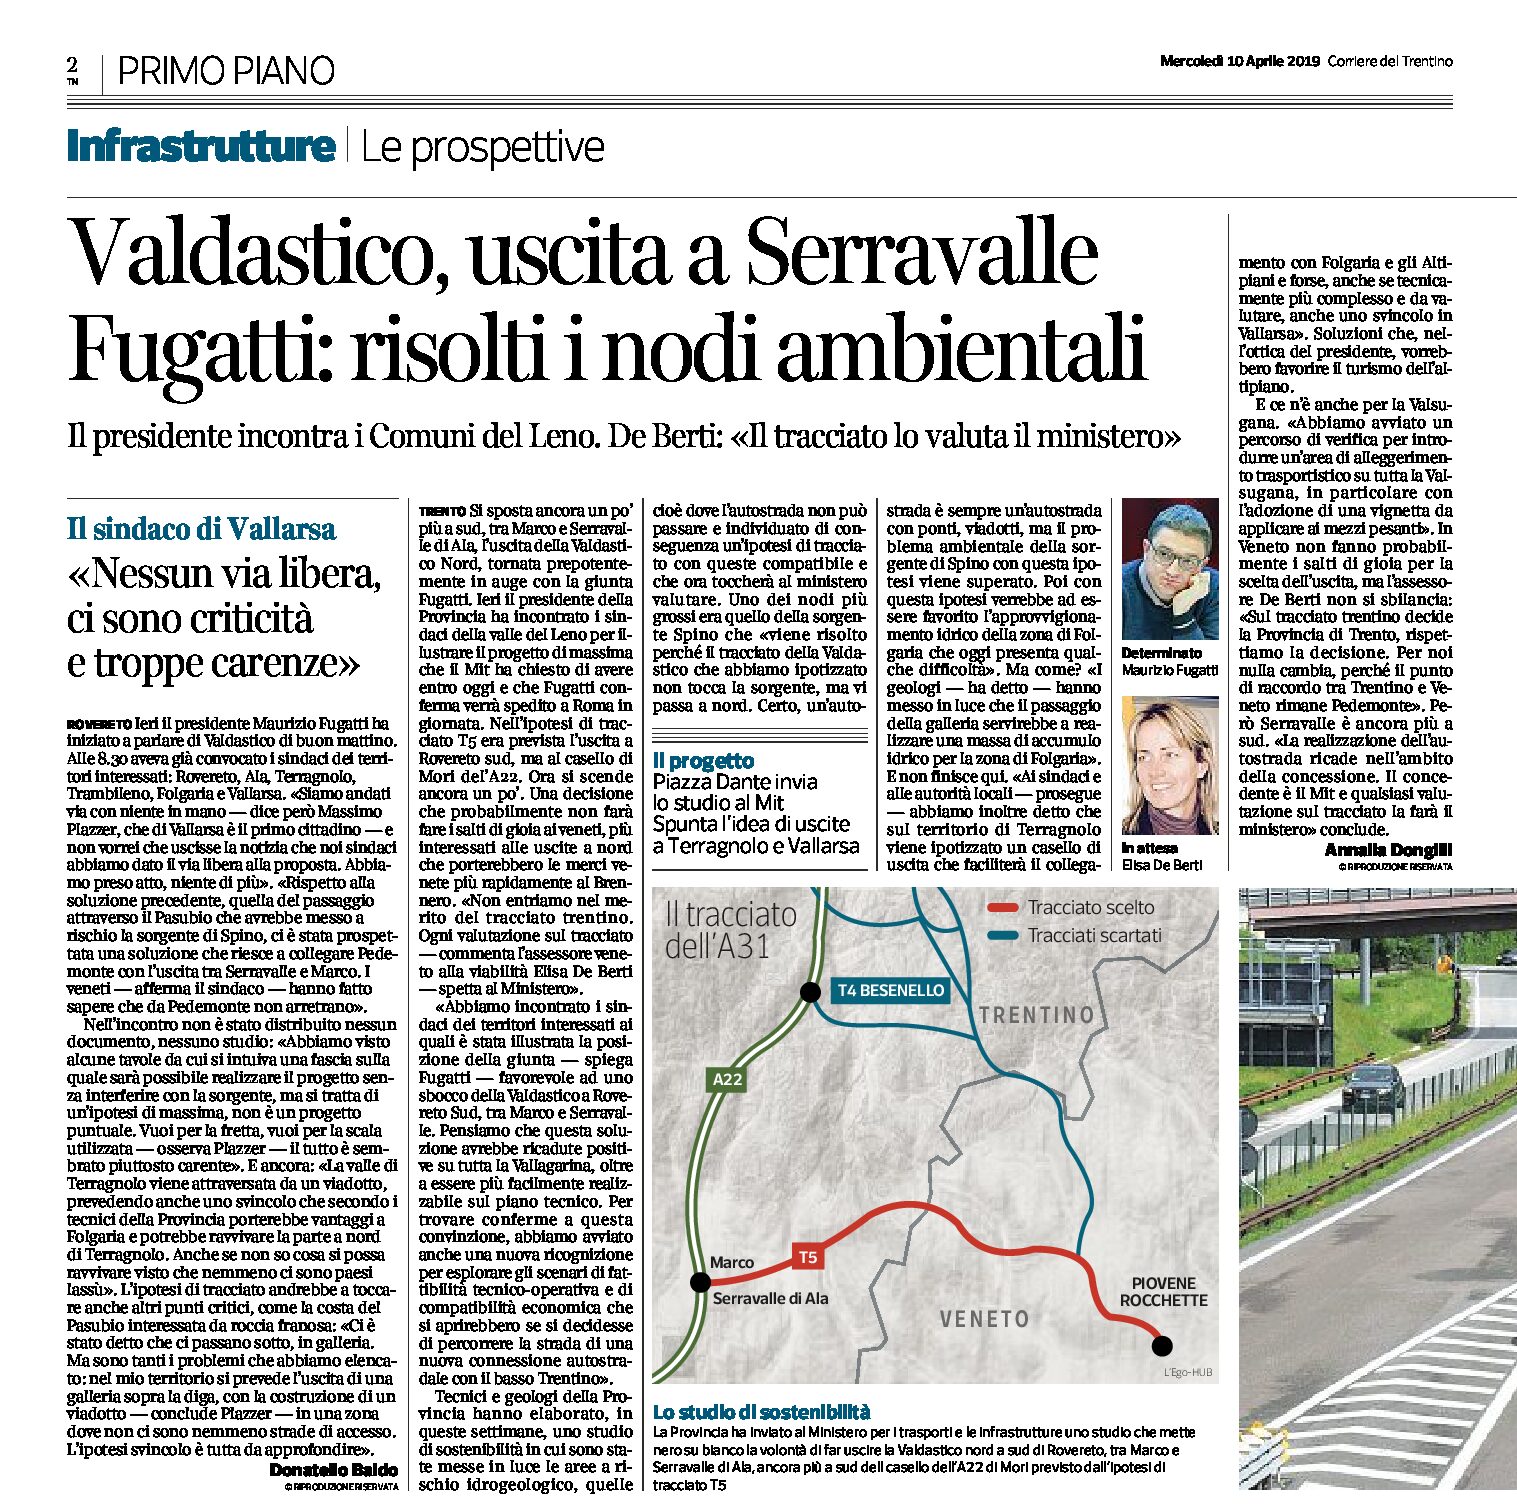 Valdastico: uscita a Serravalle. Fugatti “risolti i problemi ambientali”